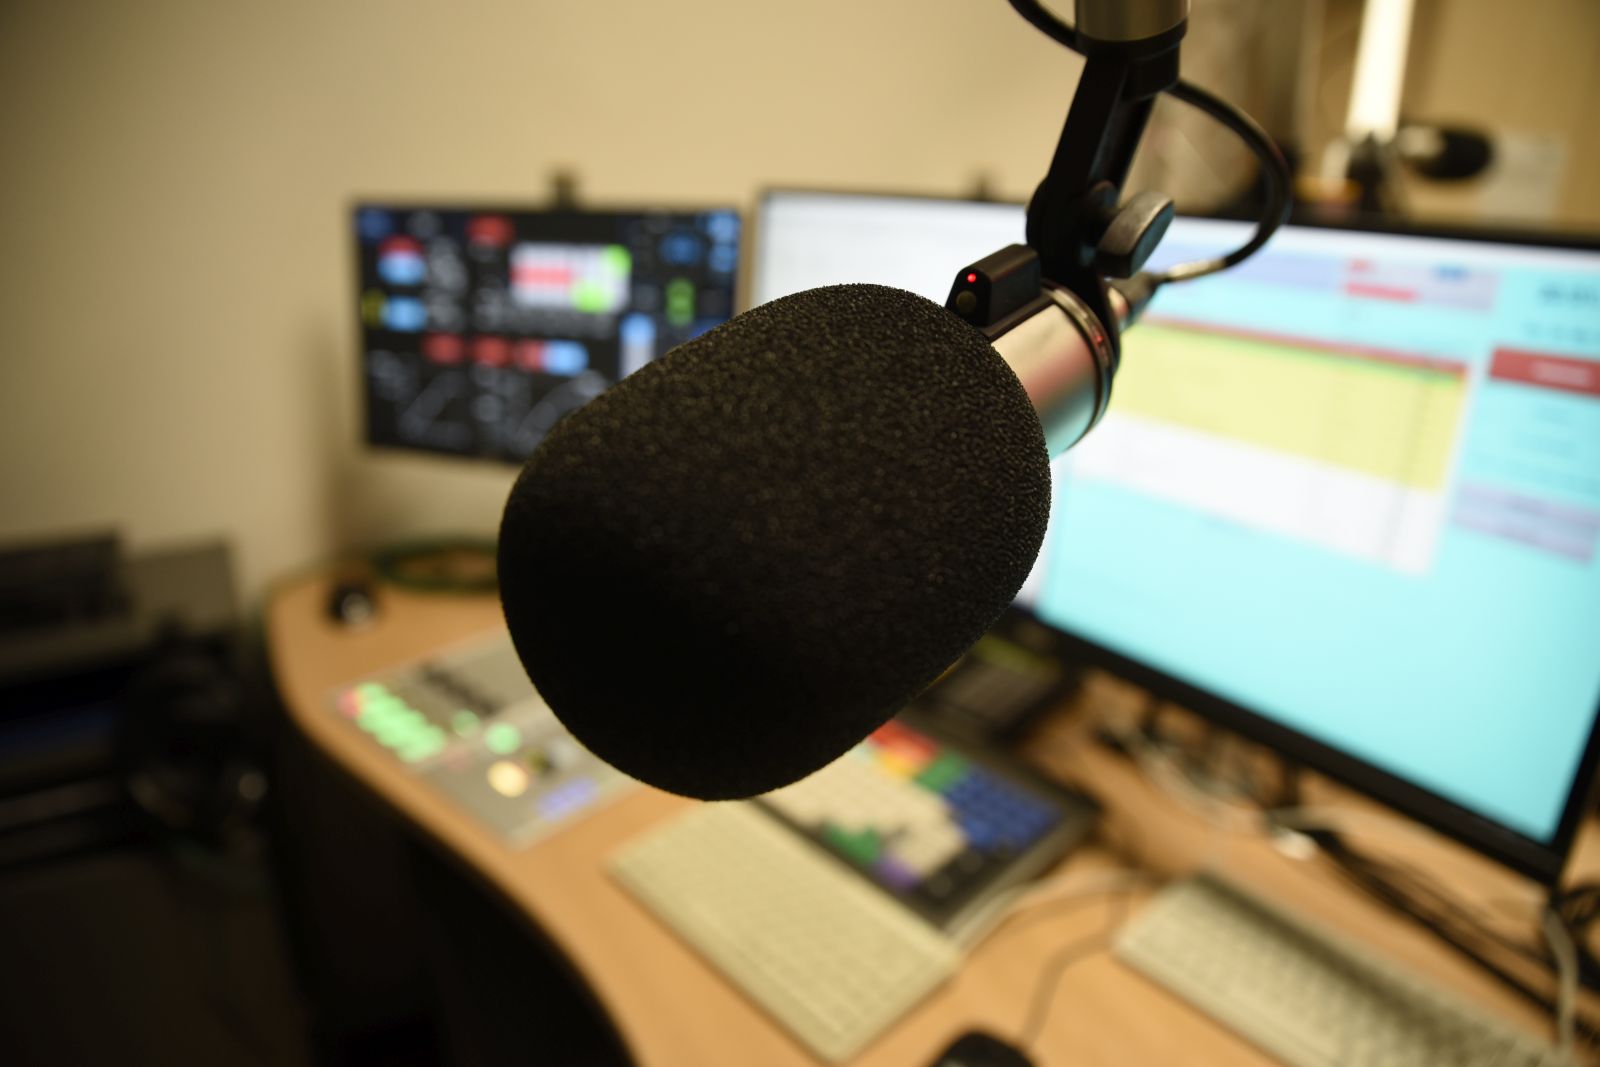 Große Bildschirme, bunte Knöpfe - im neuen FAU-Rundfunkstudio können professionelle Radiosendungen produziert werden. (Bild: FAU/Celina Henning)